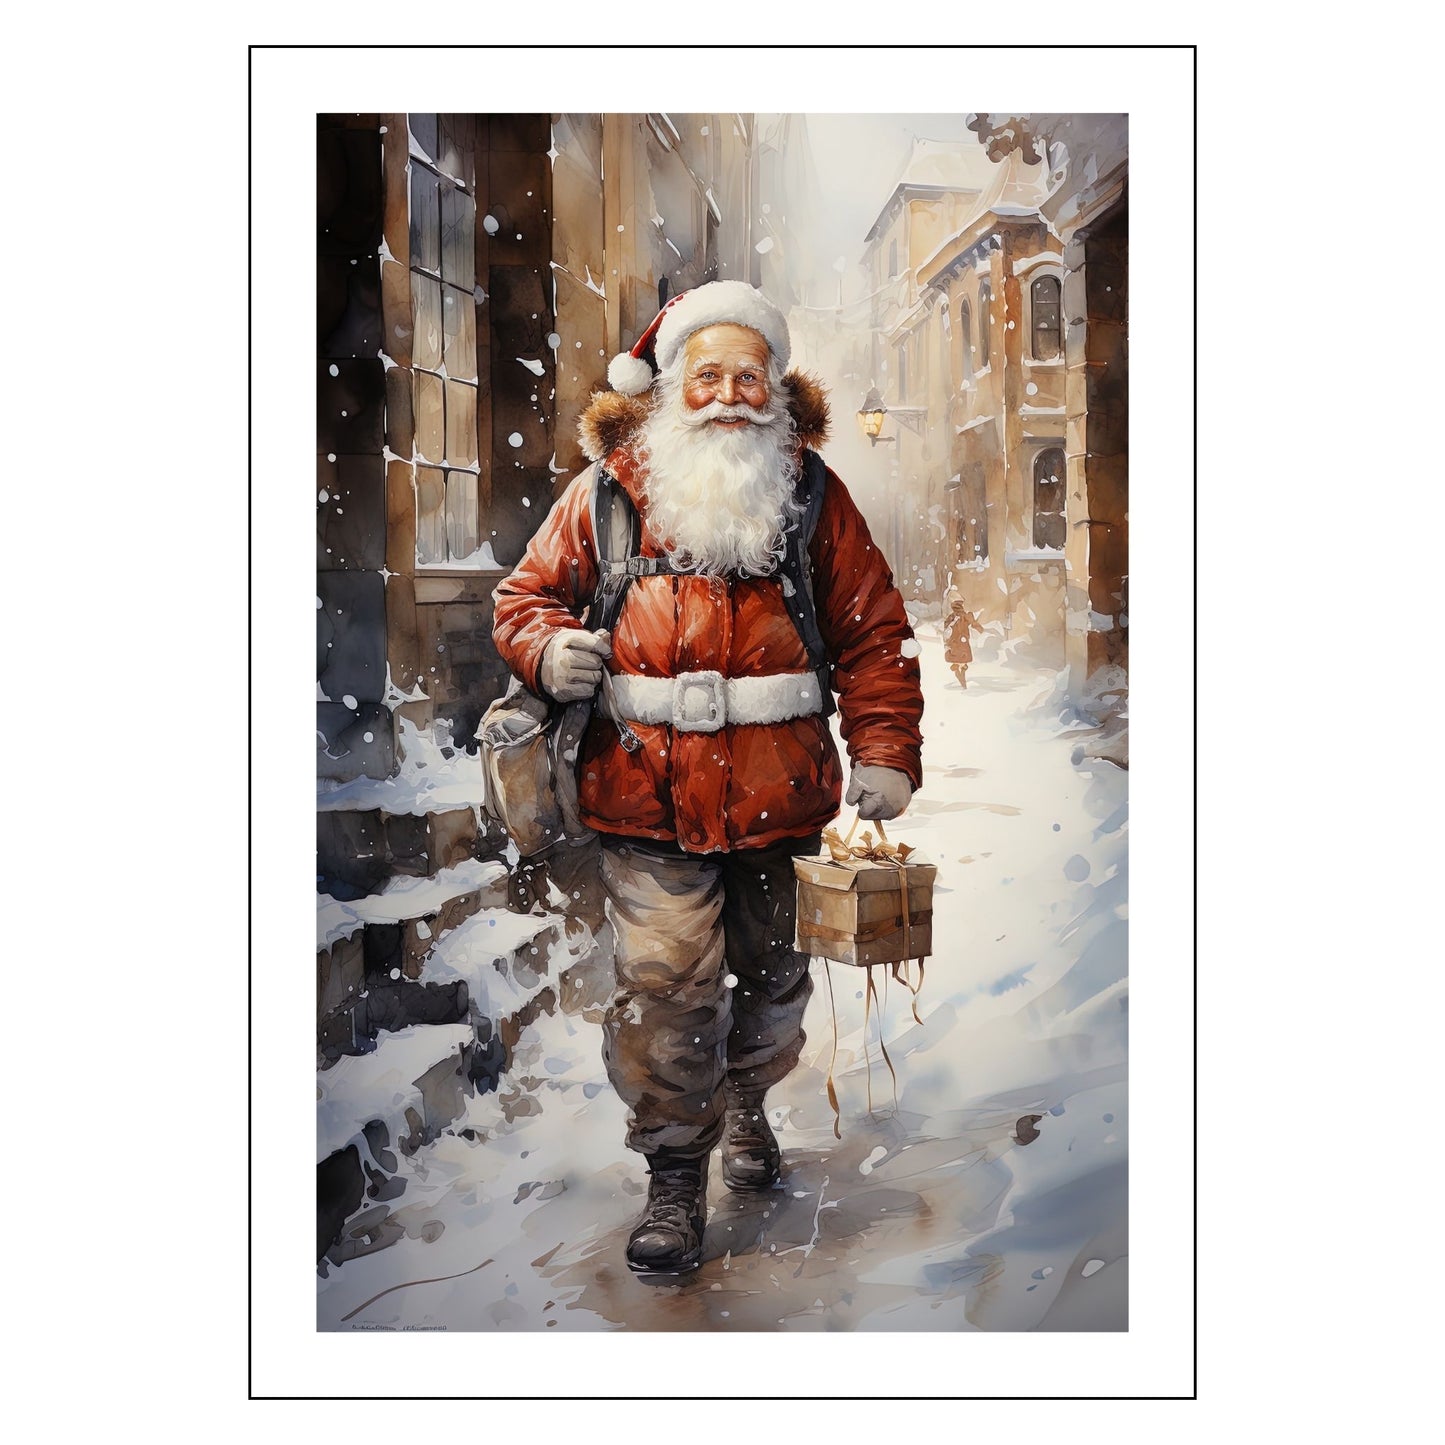 Grafisk motiv av julenisse som går på en snøkledd gate i en by. Nissen bærer med seg en julepakke og har en ryggsekk slengt over den ene skulderen. Han er kledd i en brun bukse, og har en rød jakke med hvitt belte rundt livet. Han har langt, hvitt skjegg, og på hodet har han en rød nisselue med hvit pelskant. Motivet fås som plakat og på lerret.